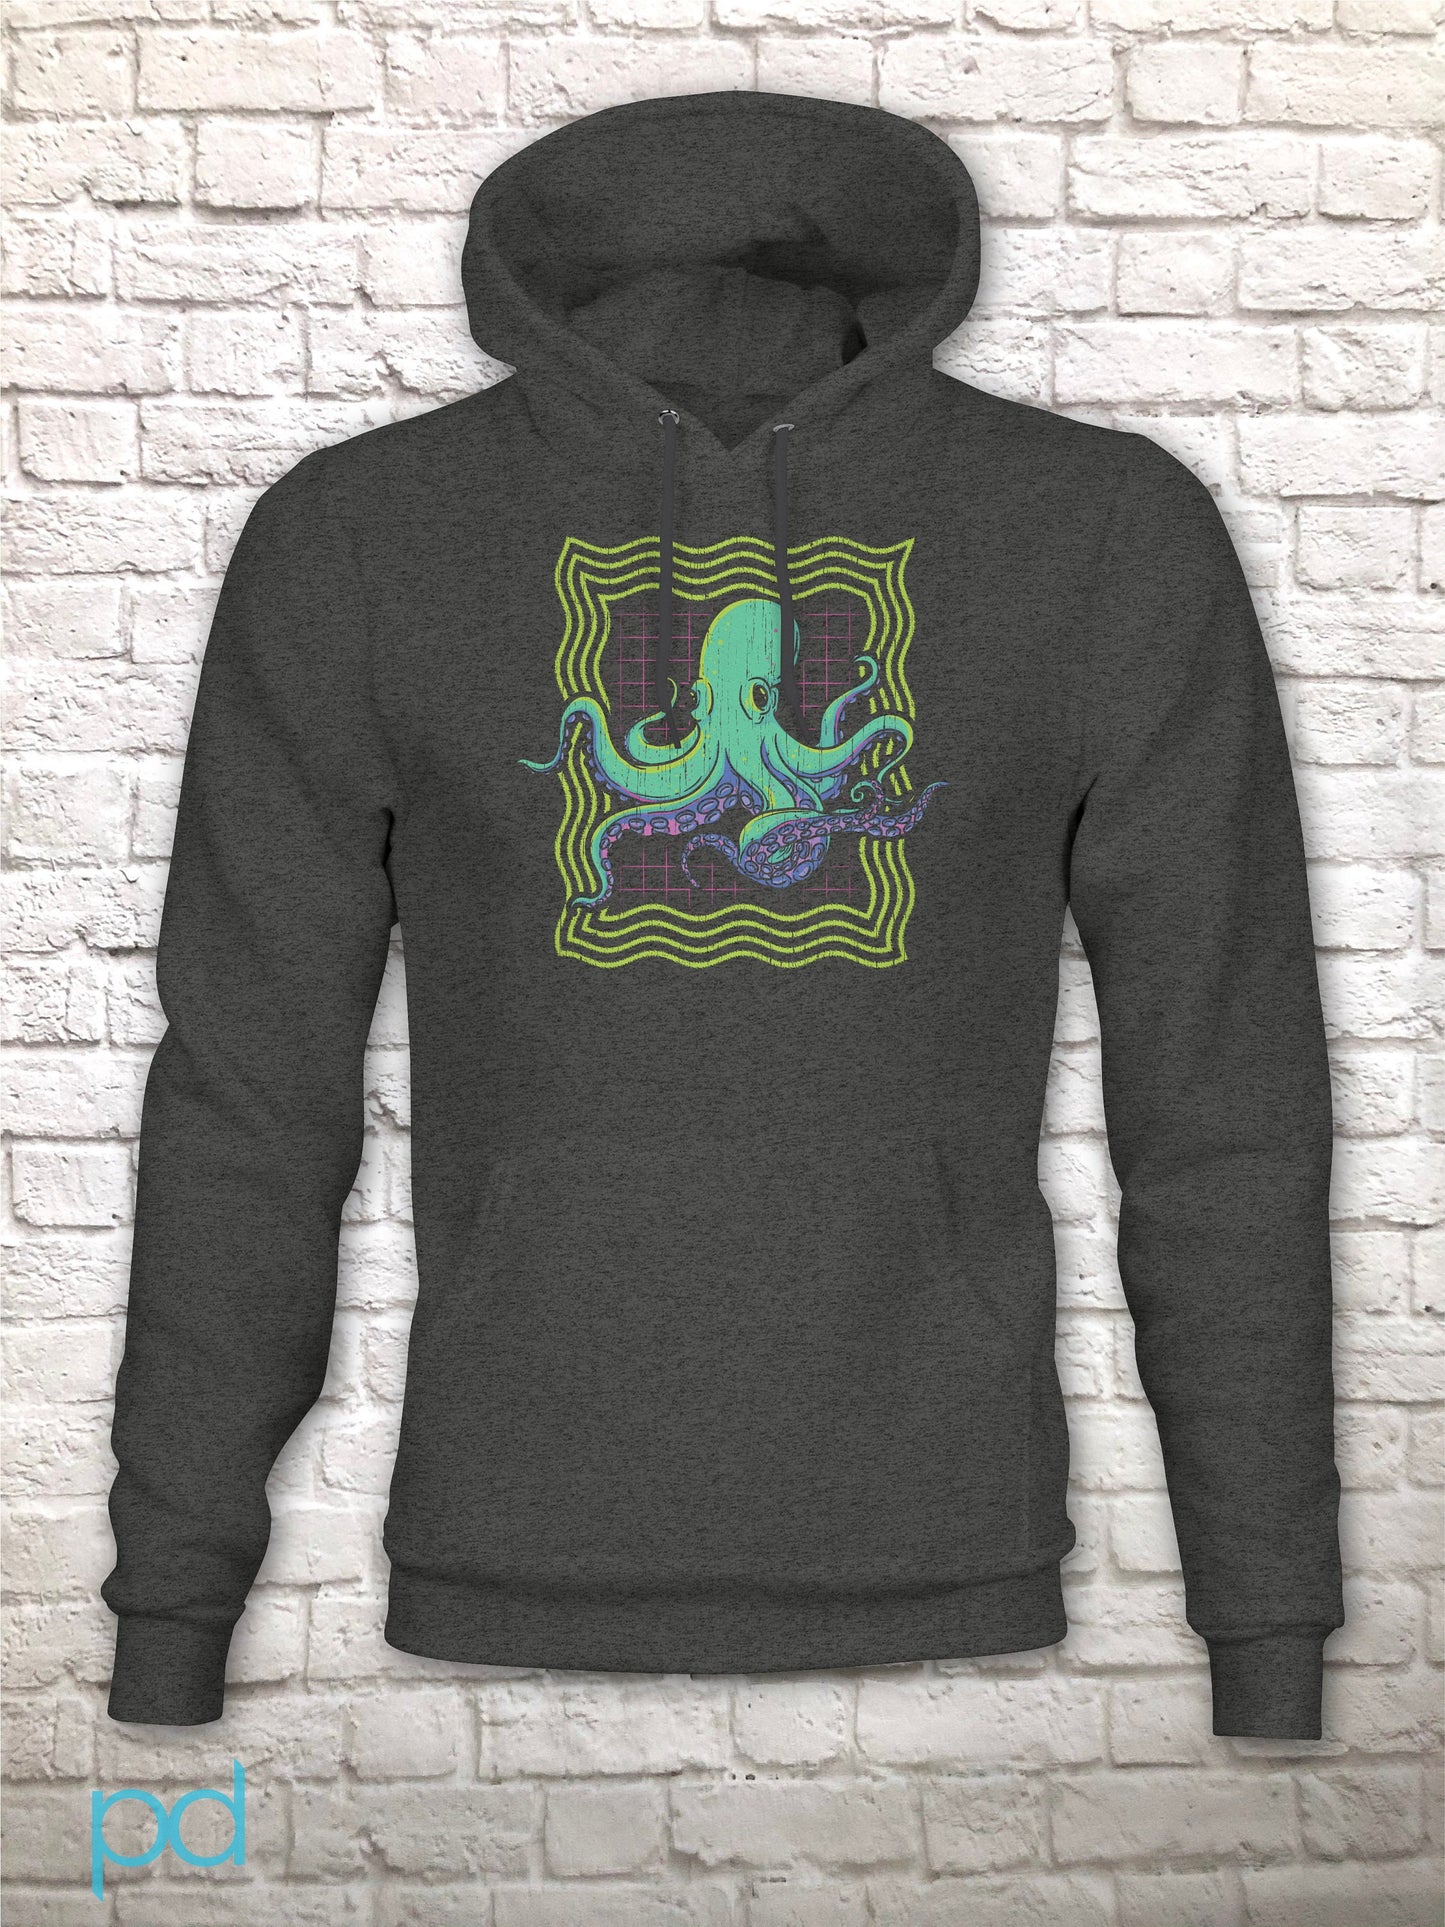 Neon Octopus Hoodie, Retro 80s Disco Gift Graphic Print Hooded Sweatshirt Top